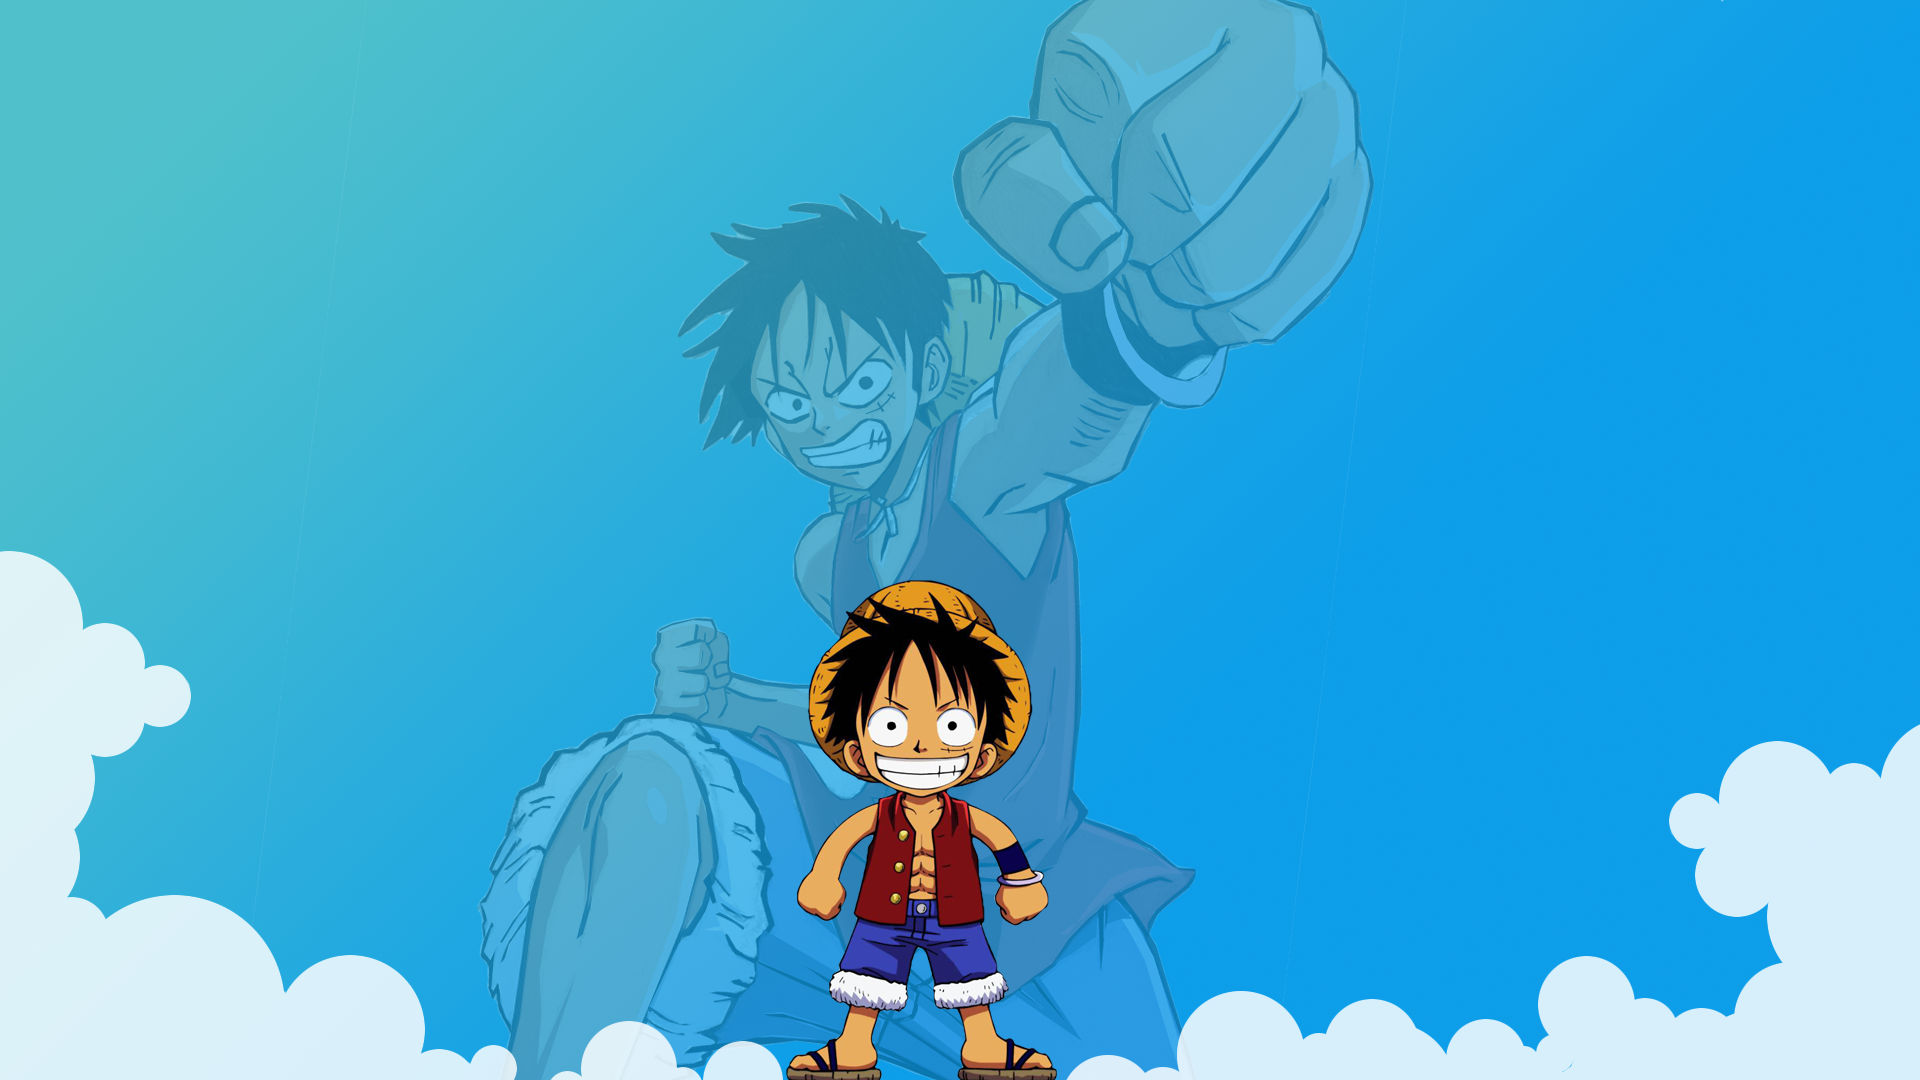 Bạn yêu thích bộ anime/manga One Piece và muốn có một bức tranh Luffy độc đáo? Giờ đây, bạn có thể sở hữu bức vẽ tuyệt vời của nhân vật chính trong One Piece! Tỉ mỉ đến từng chi tiết, hình ảnh này sẽ khiến người hâm mộ hài lòng. Xem ngay!